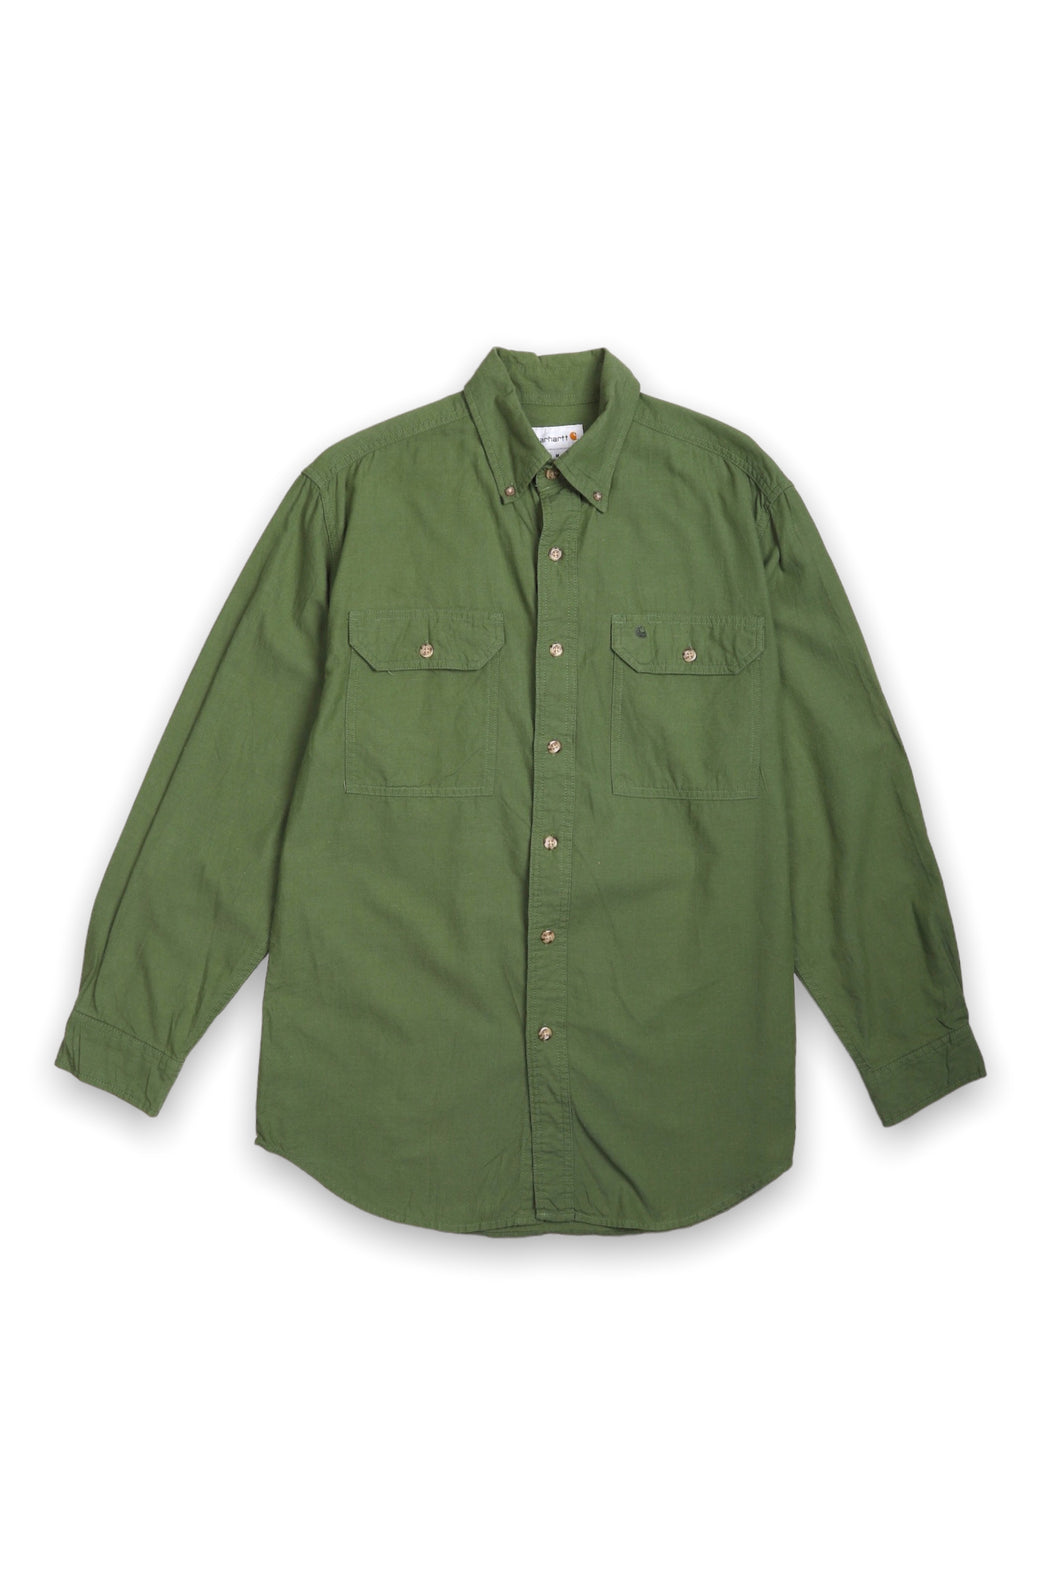 Carhartt green long sleeved regular fit '90s shirt